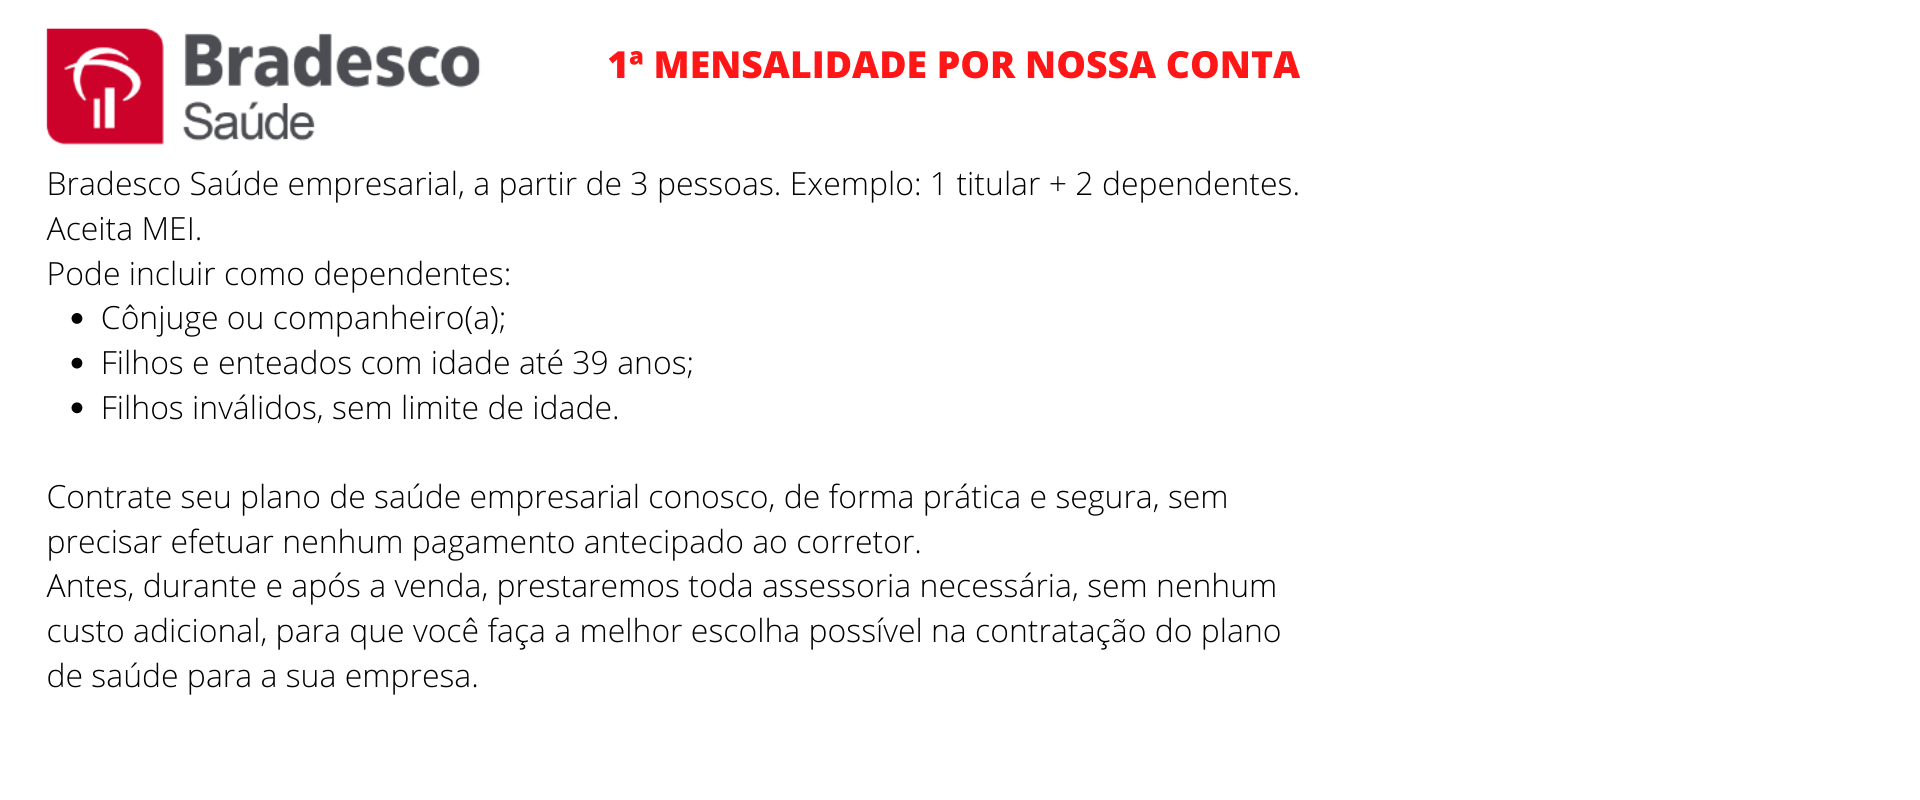 Bradesco Saúde Empresarial - Marechal Floriano